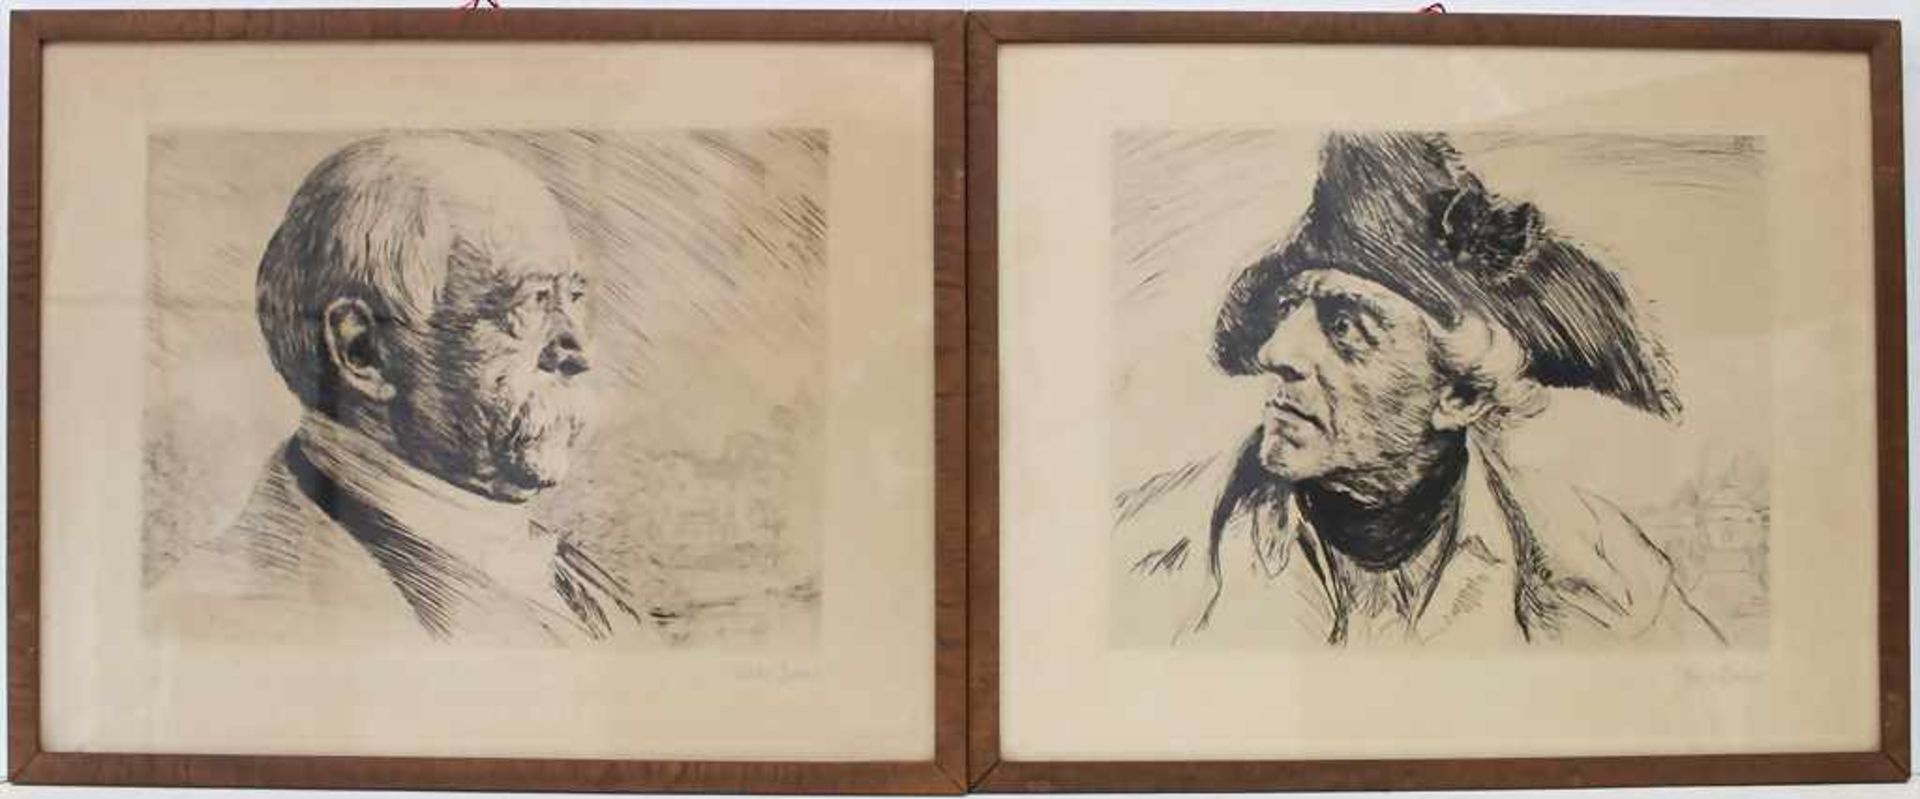 Hans Baur (1829-1897), Porträts 'Bismarck' und 'Friedrich II' / 2 portraits 'Bismarck' and '